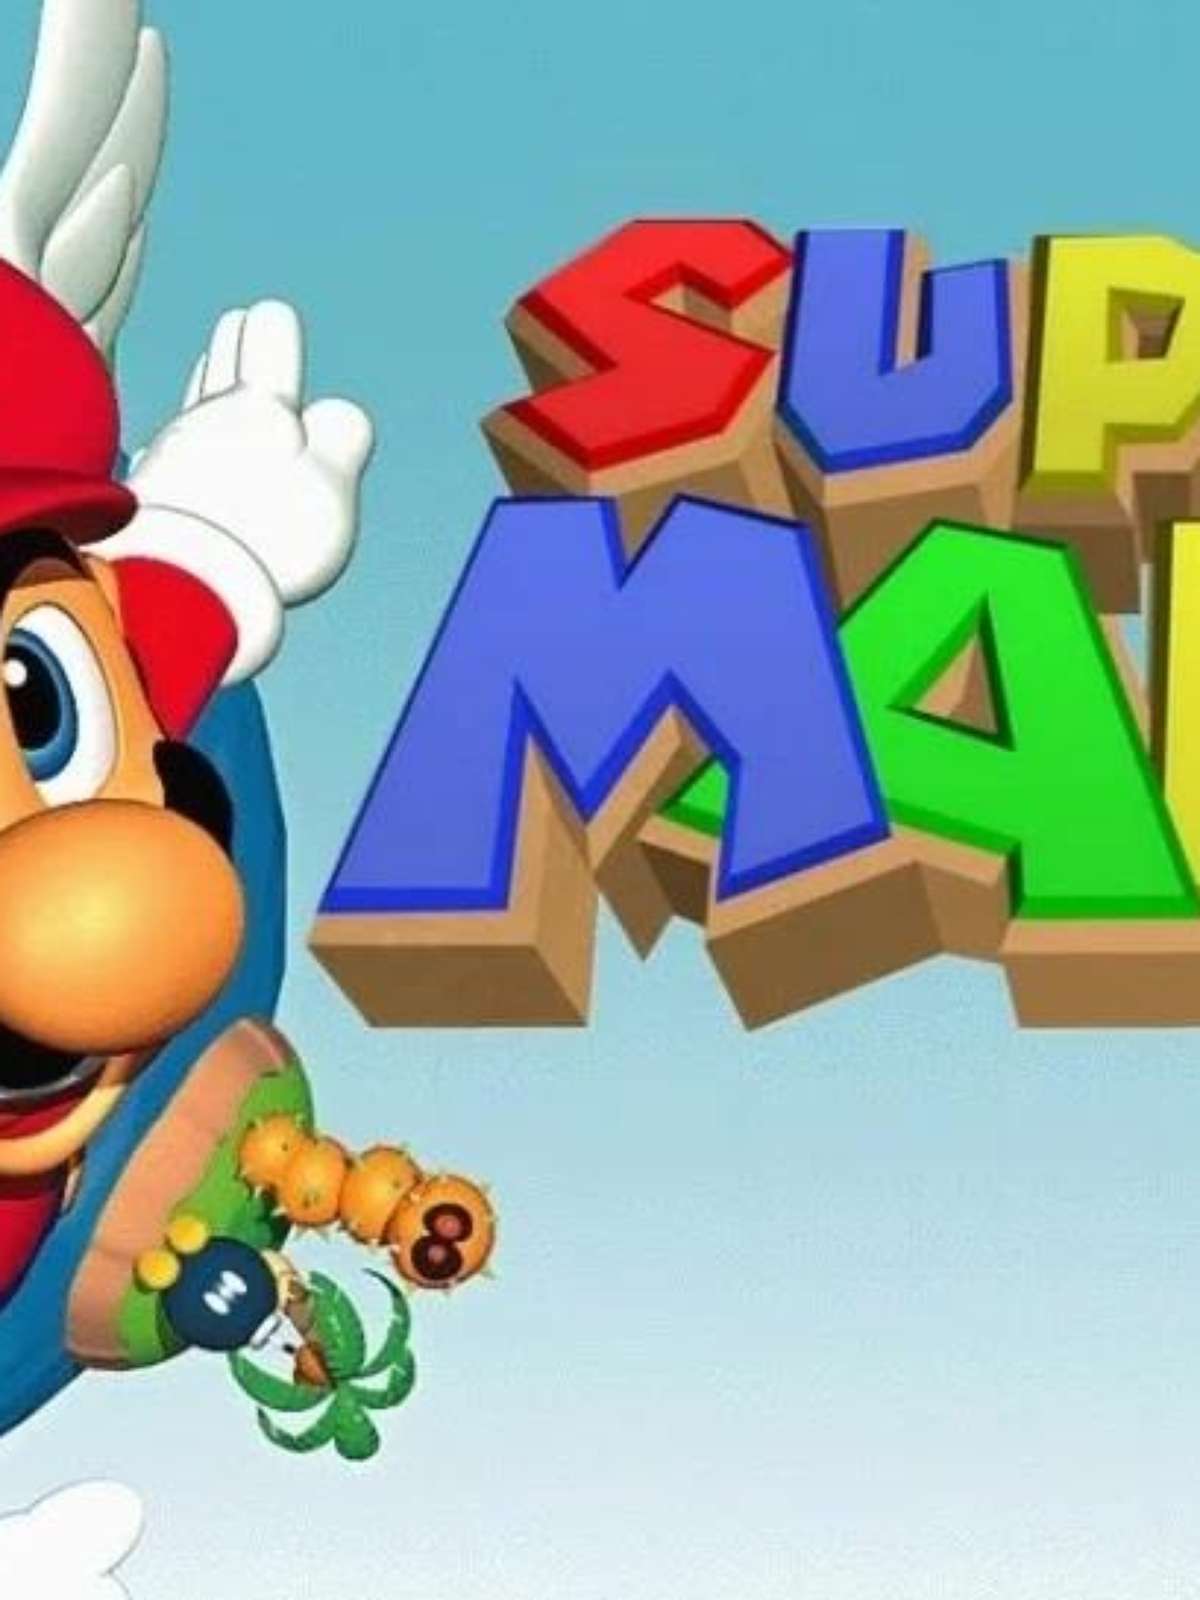 Super Mario 64 é vendido por US$ 1,5 mi, valor mais alto pago por um  videogame